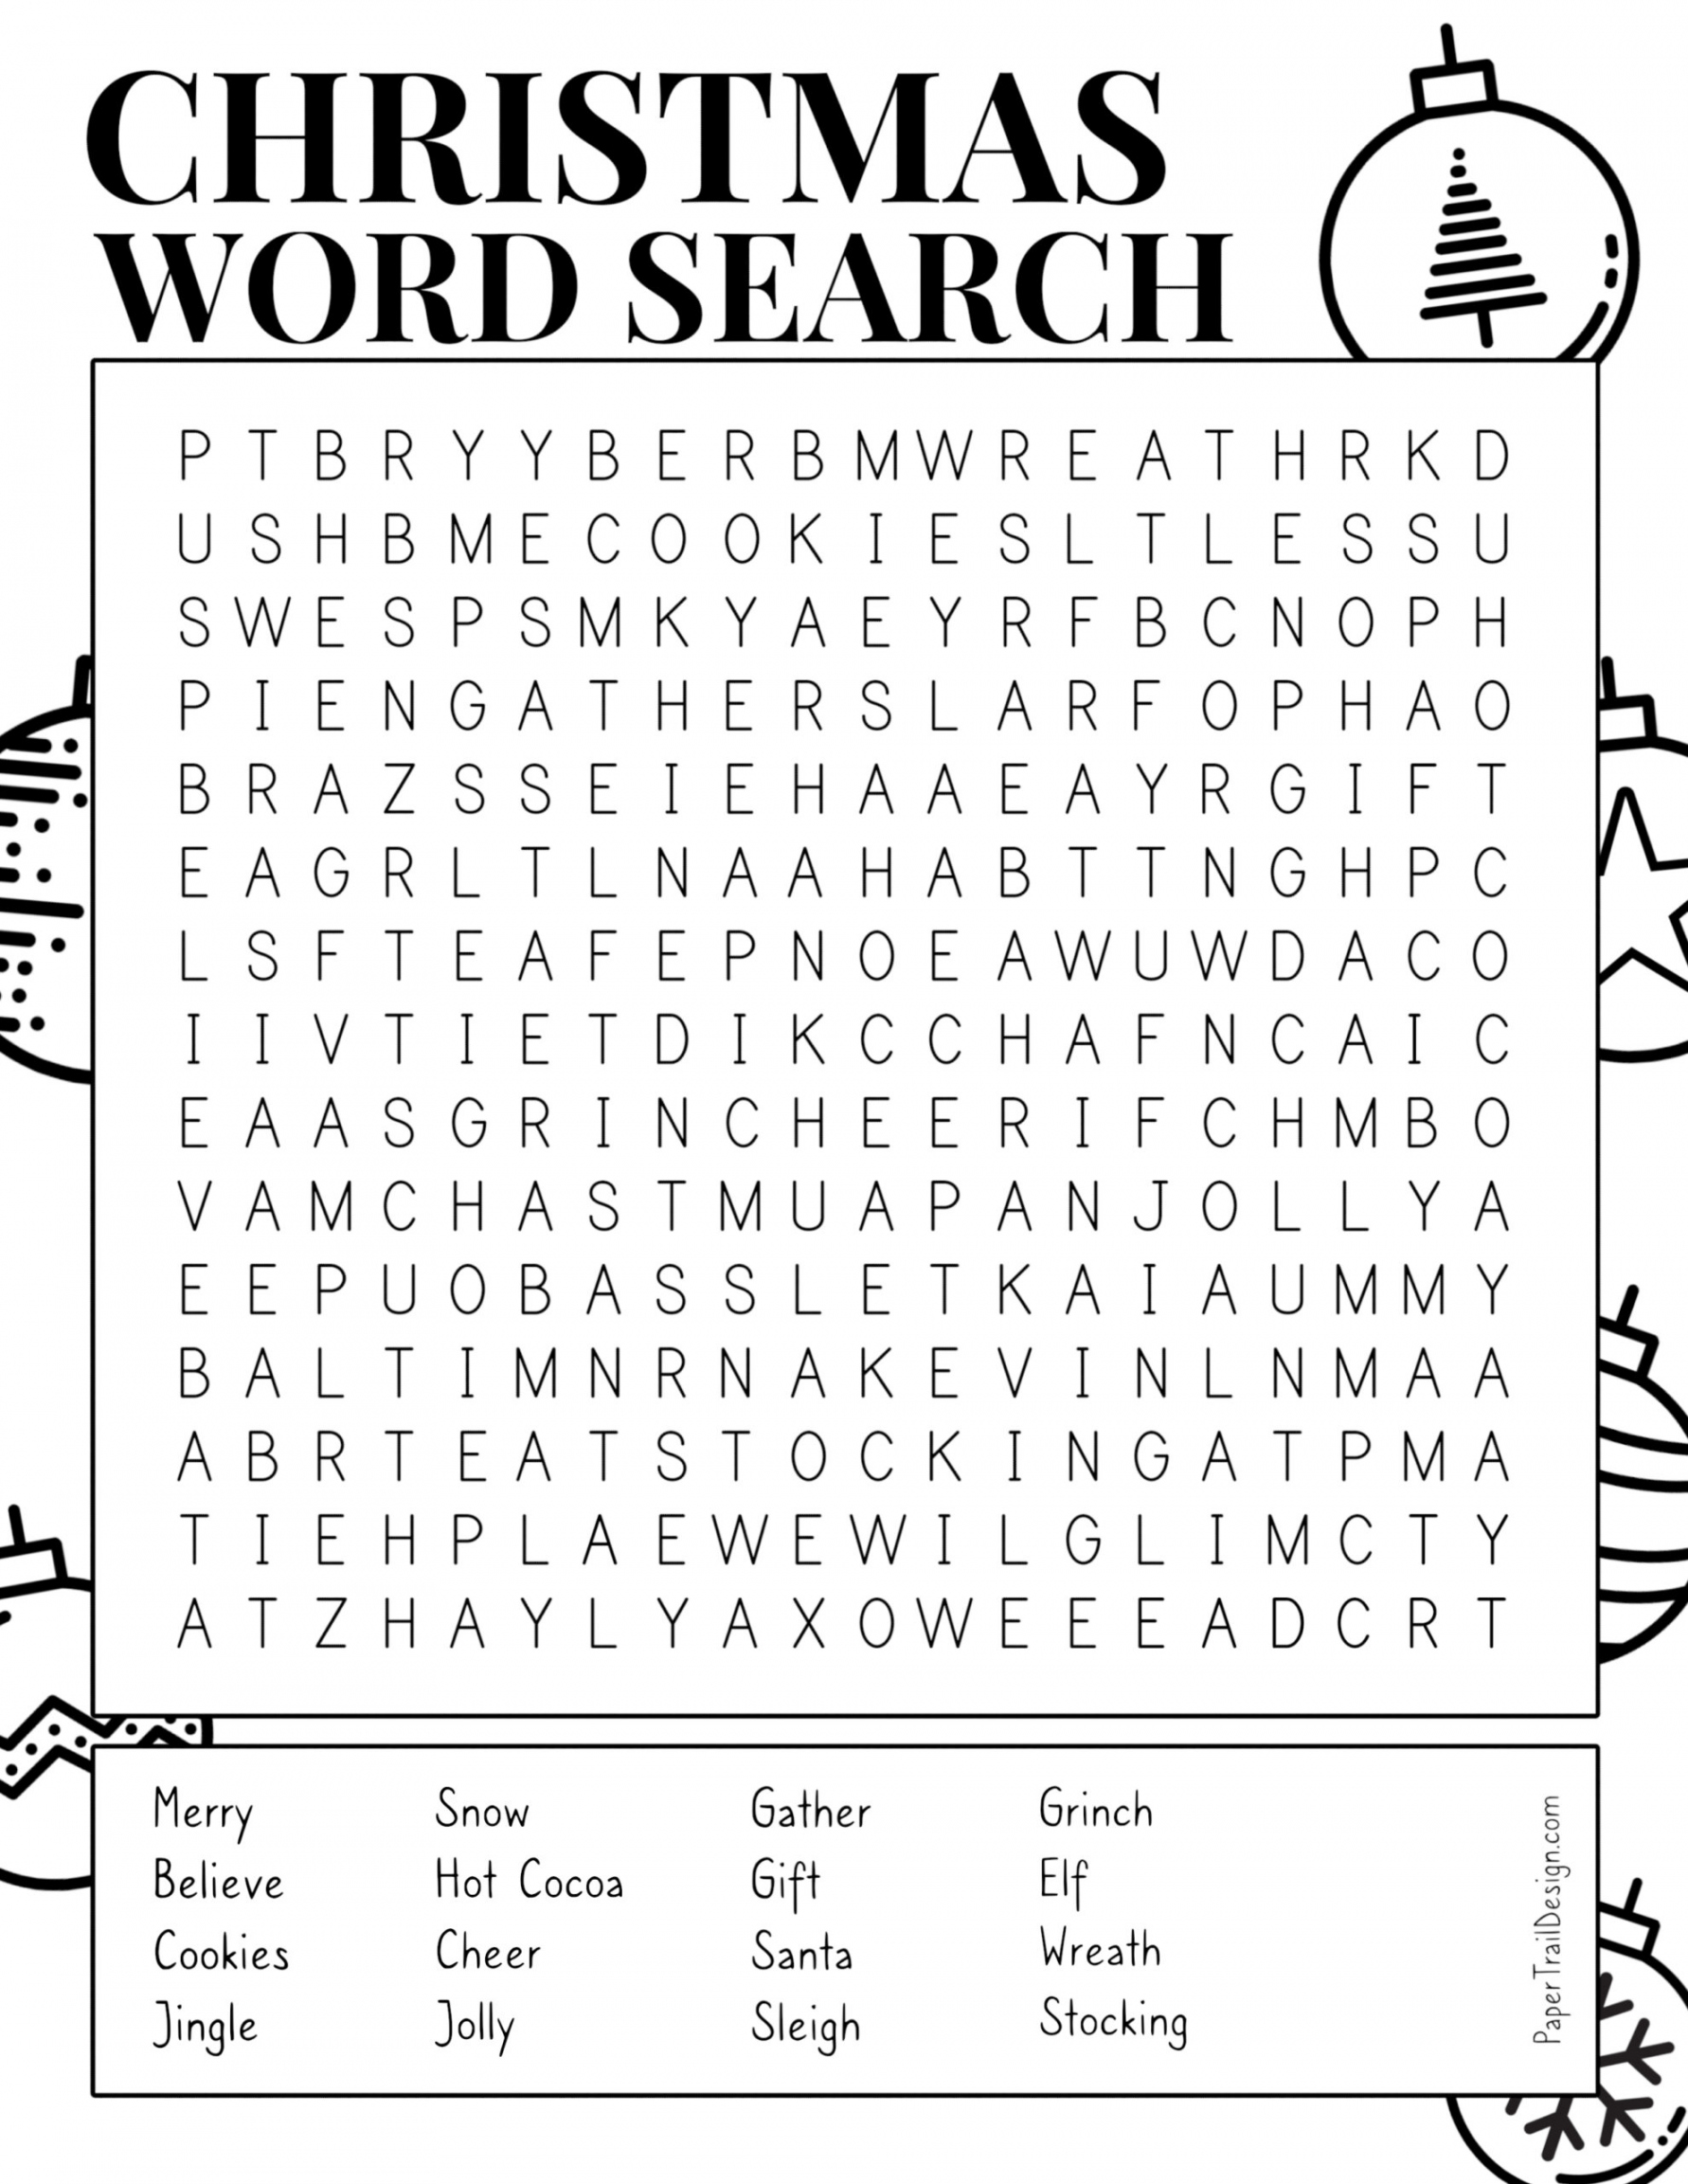 Free Christmas Word Search Printable - Printable - Christmas Word Search Printable - Paper Trail Design